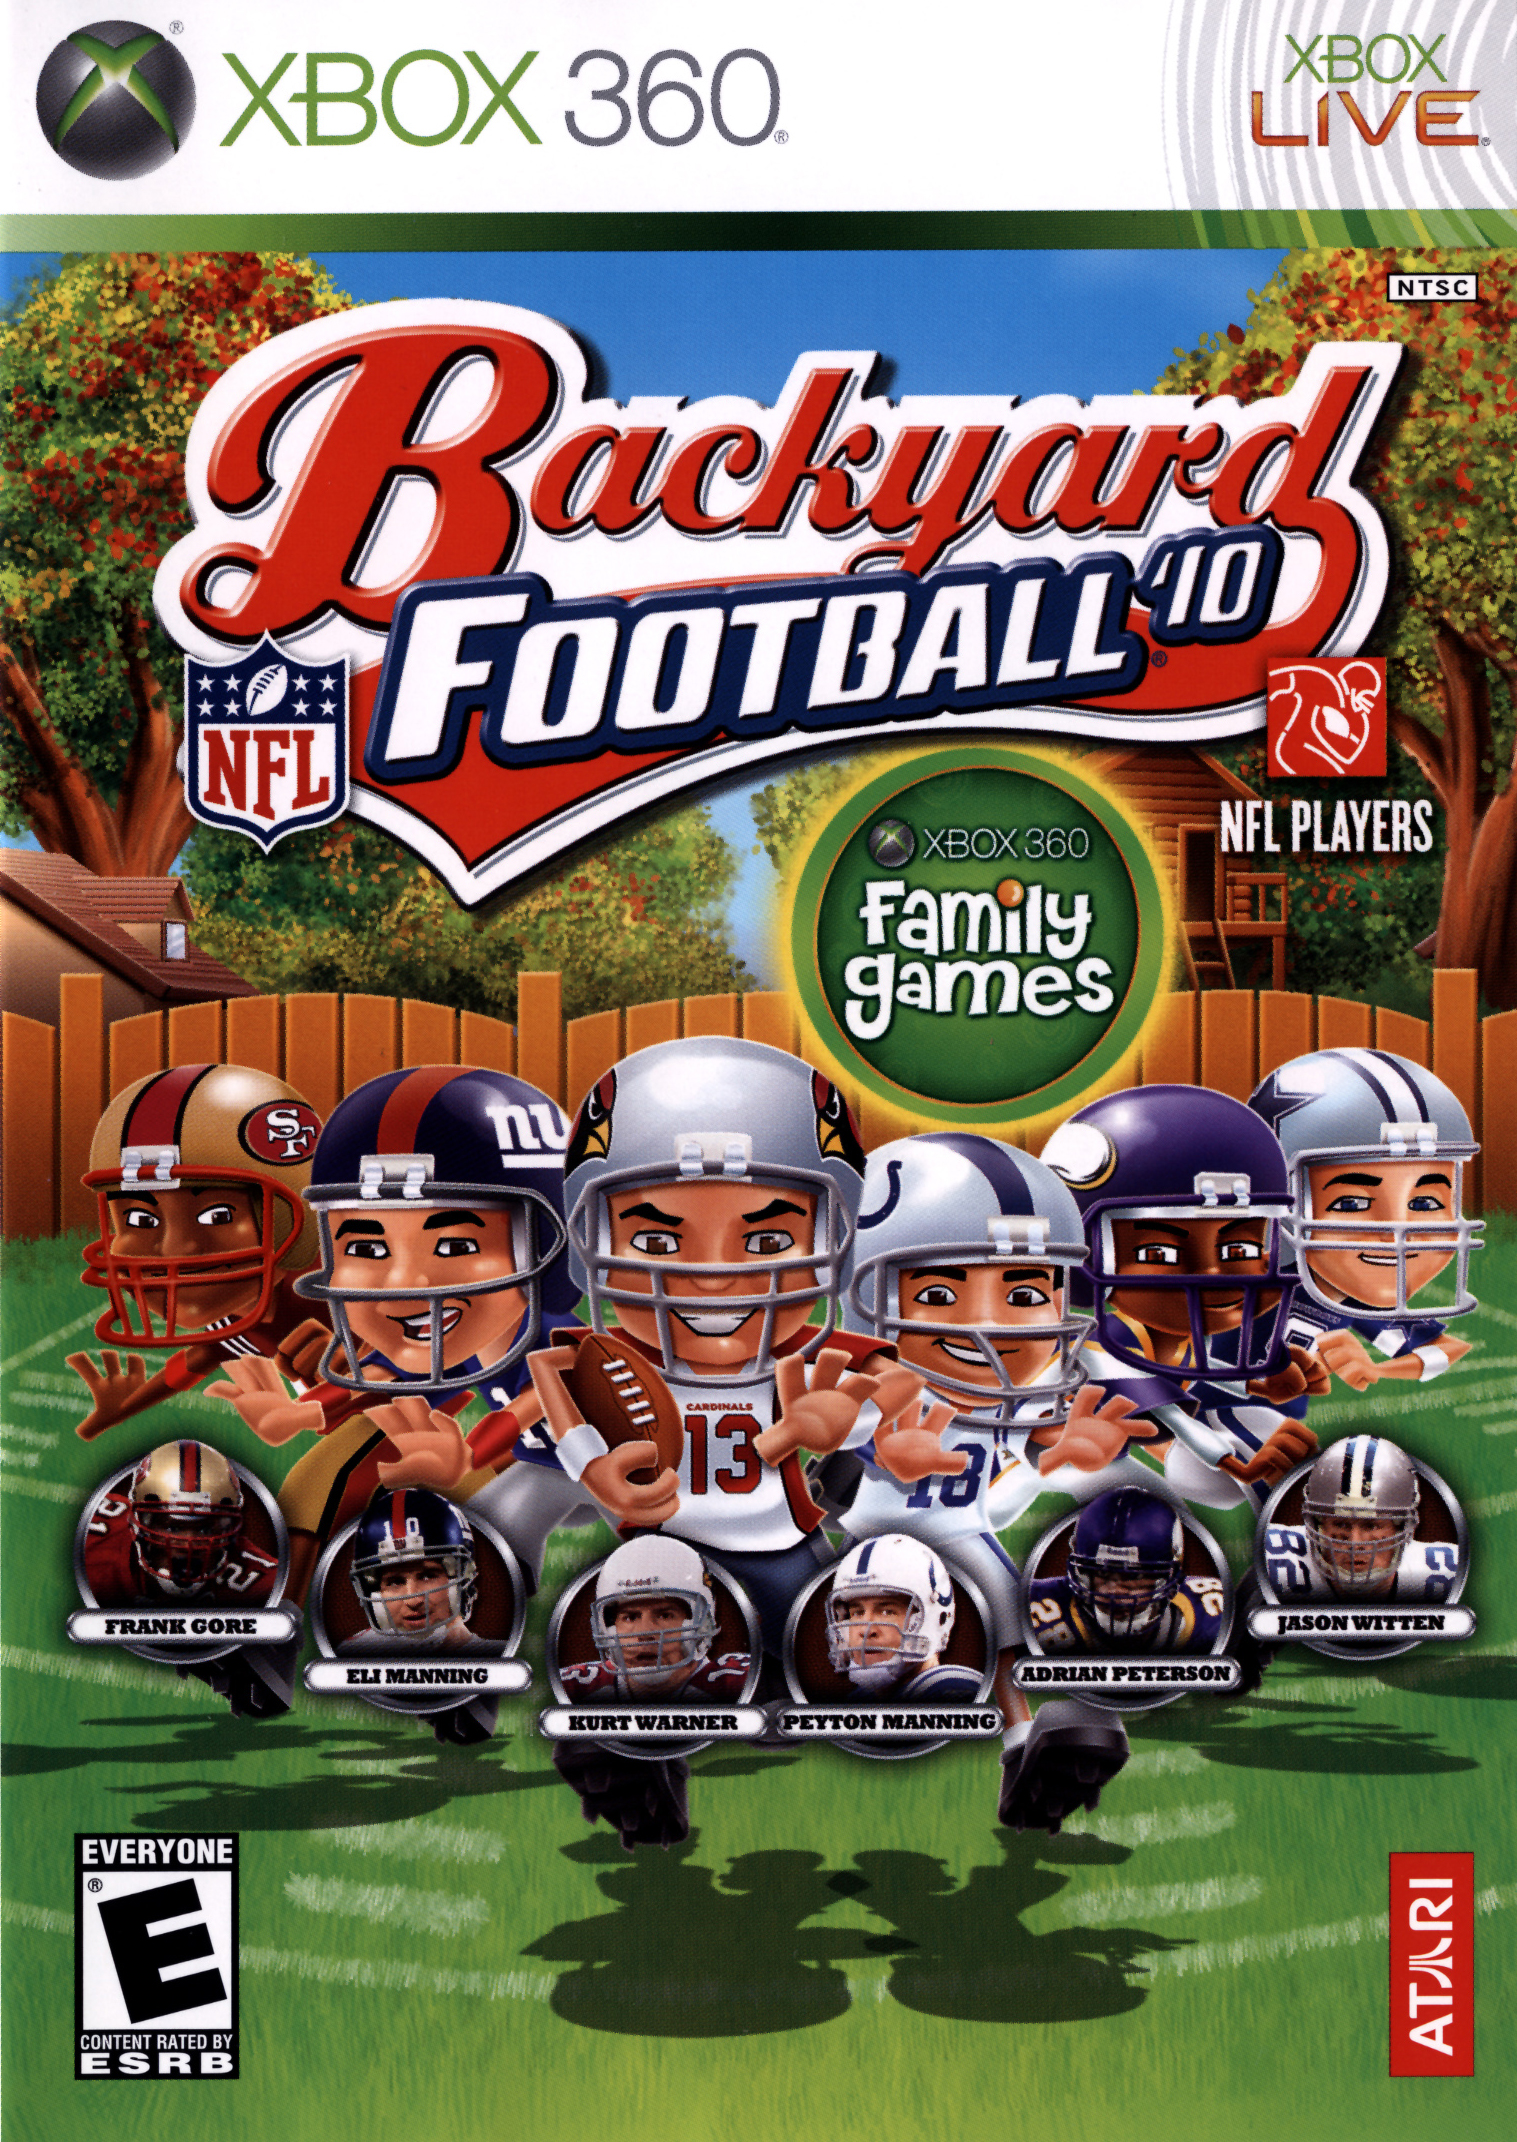 Backyard Football 2010 - Xbox 360 - image 1 of 2